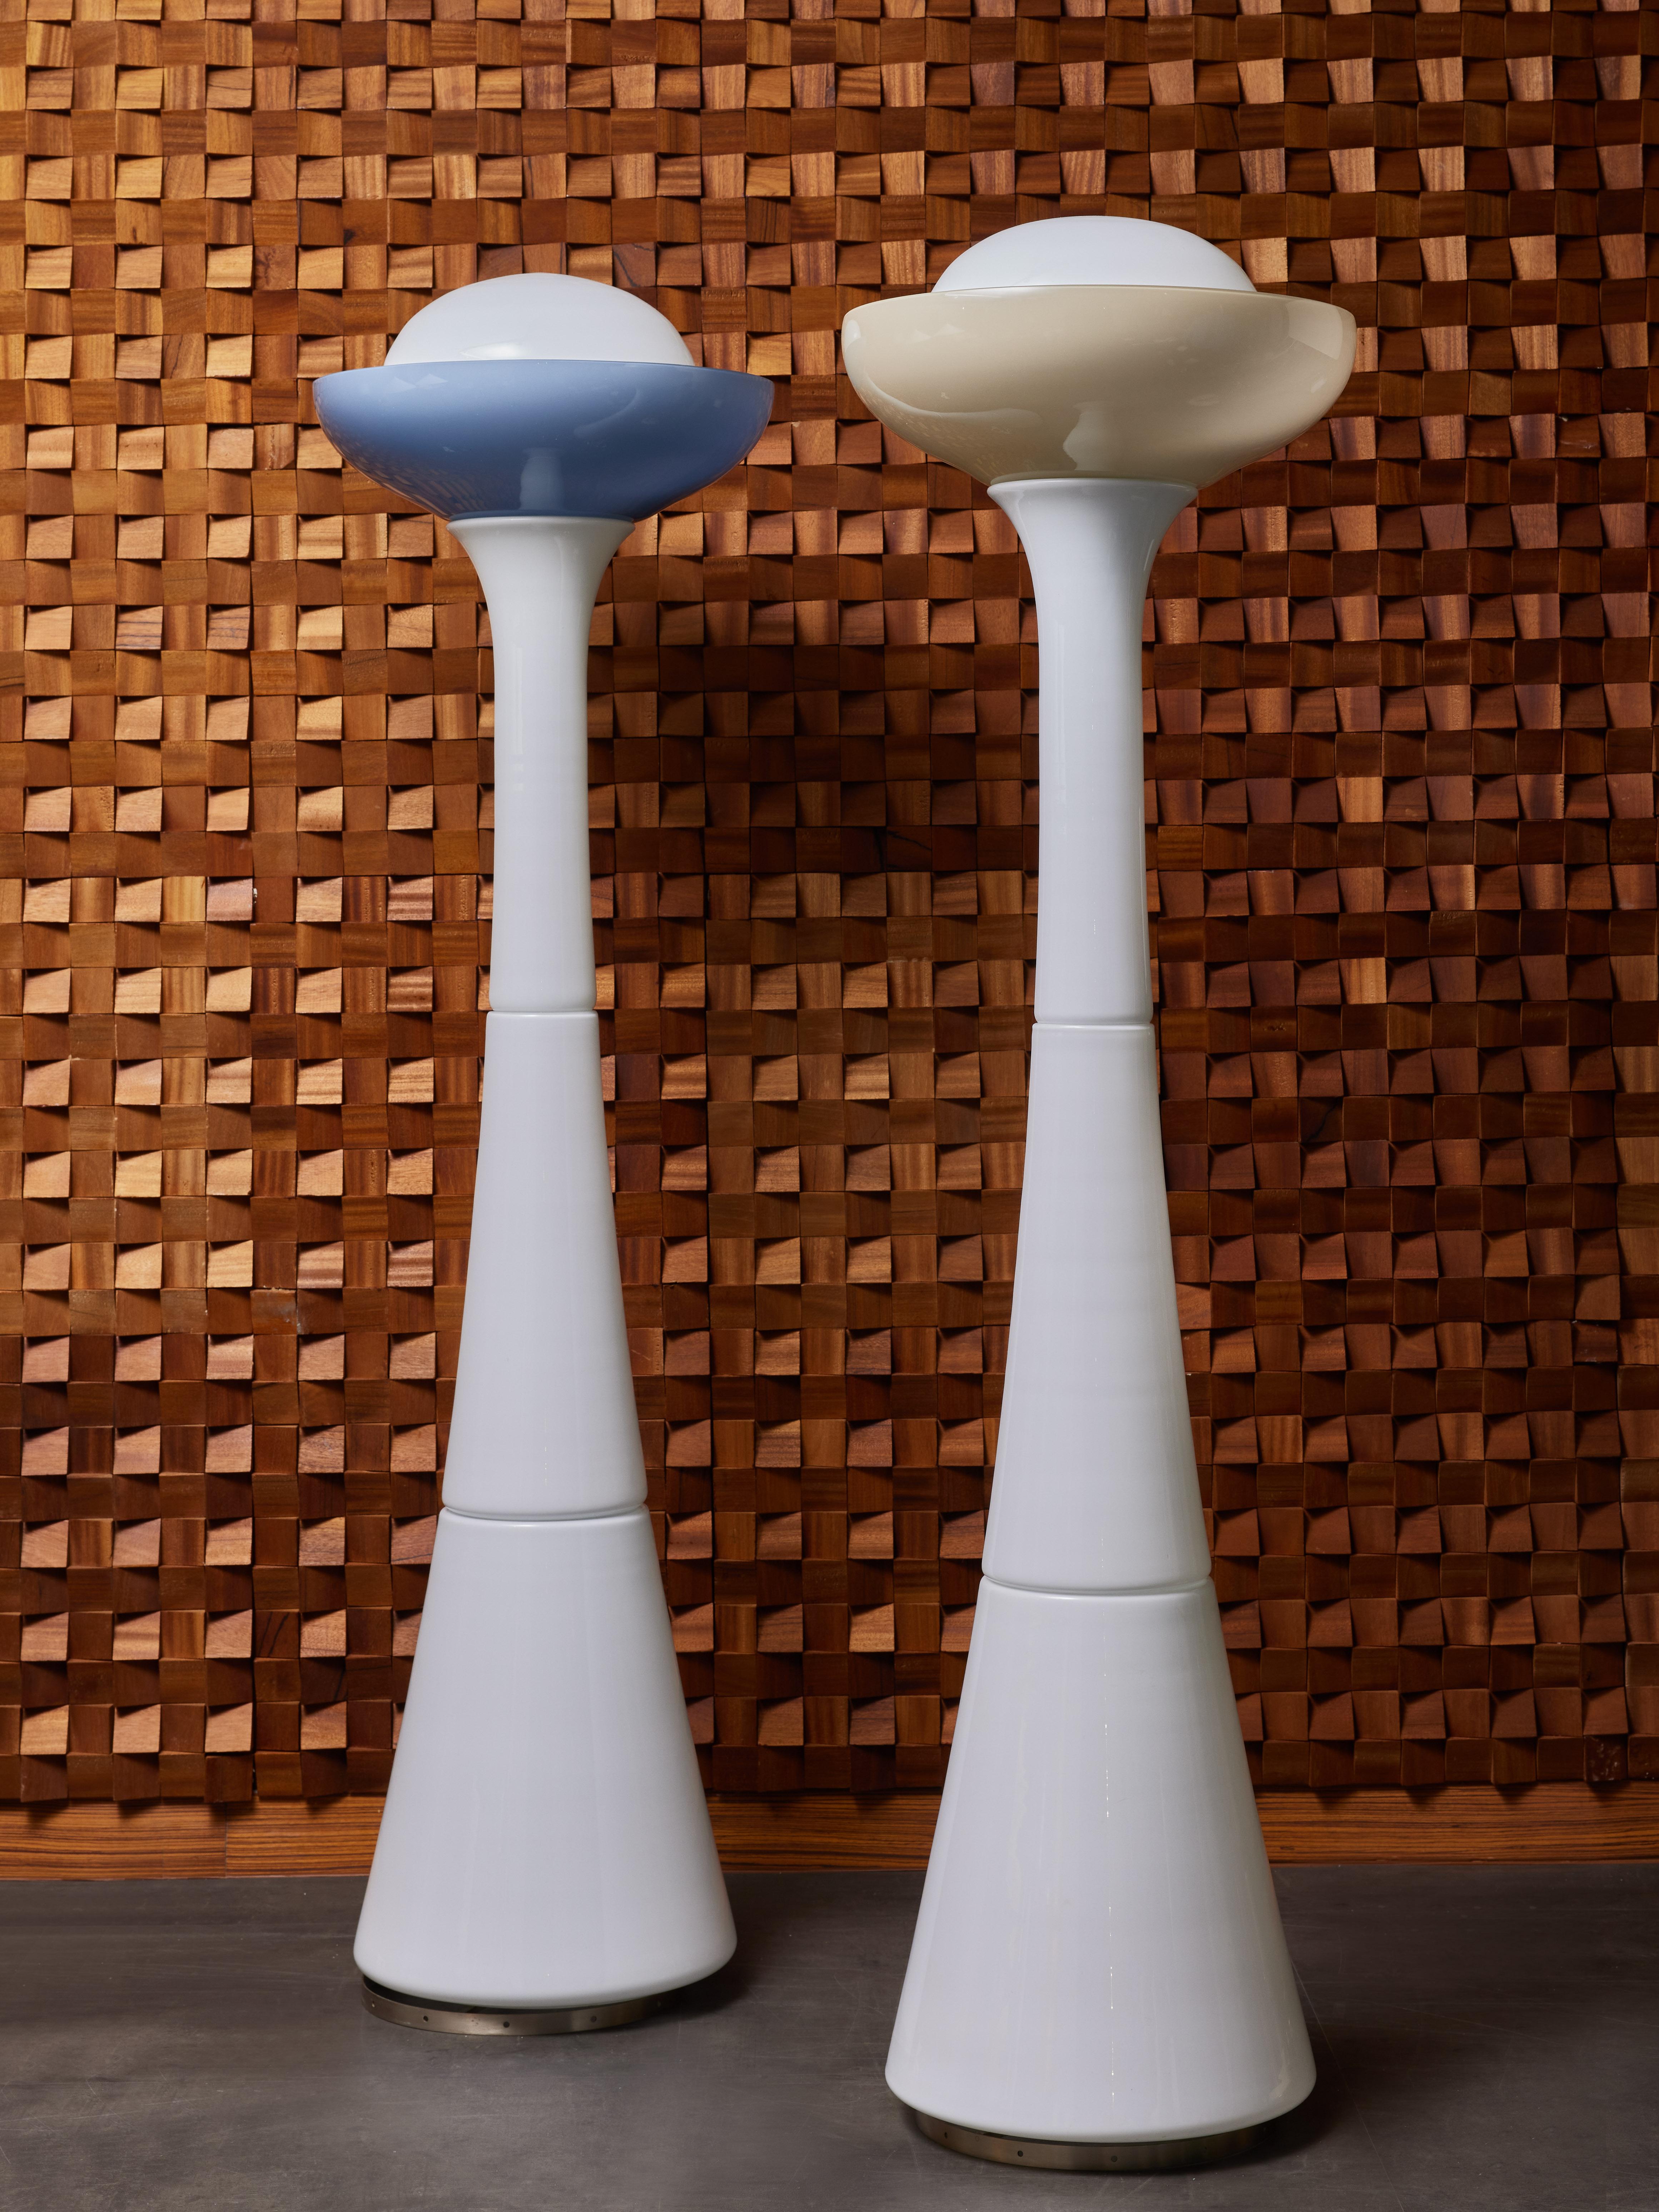 Magnifiques lampadaires conçus par Carlo Nason pour Selenova, ils sont constitués d'une structure intérieure en acier, sur laquelle sont empilés plusieurs verres opalins, surmontés d'un plus grand bol bleu ou brun.

Selenova
Selenova est un